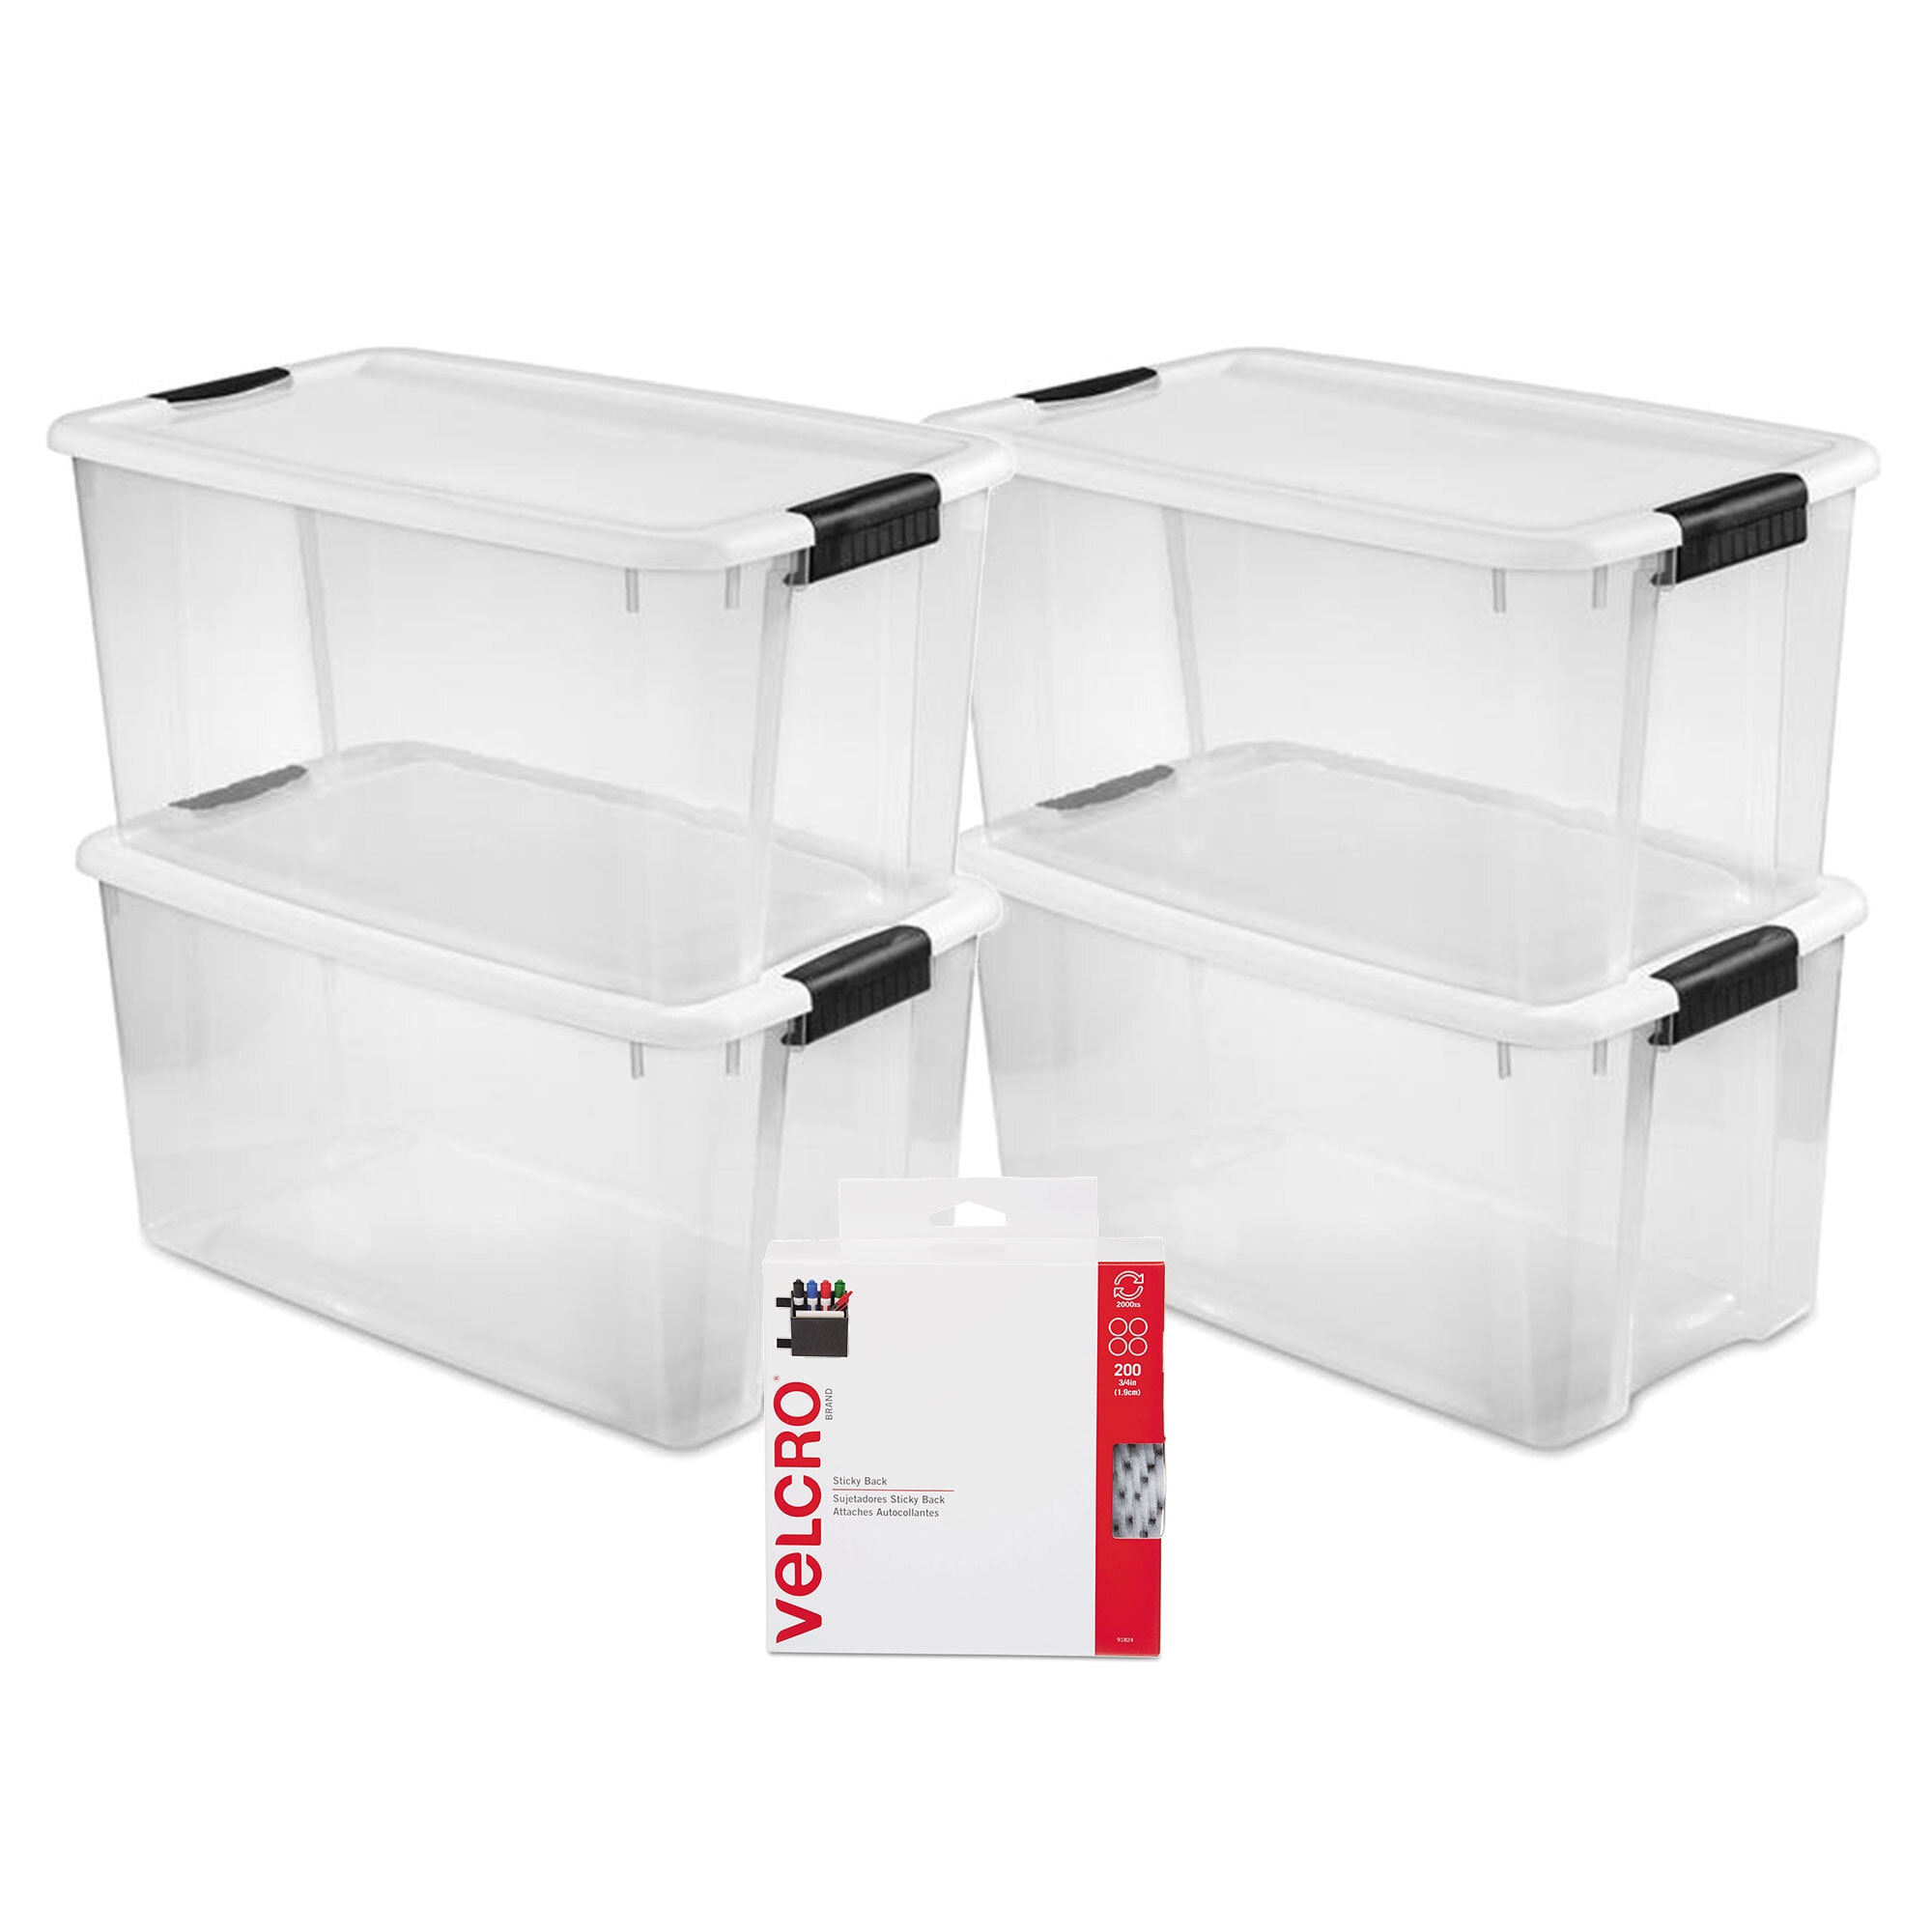 Sterilite 116 Quart Clear Ultra Multipurpose Storage Tote, 4 Pack, and 70  Quart Clear Ultra Multipurpose Storage Tote, 4 Pack for Home Organization